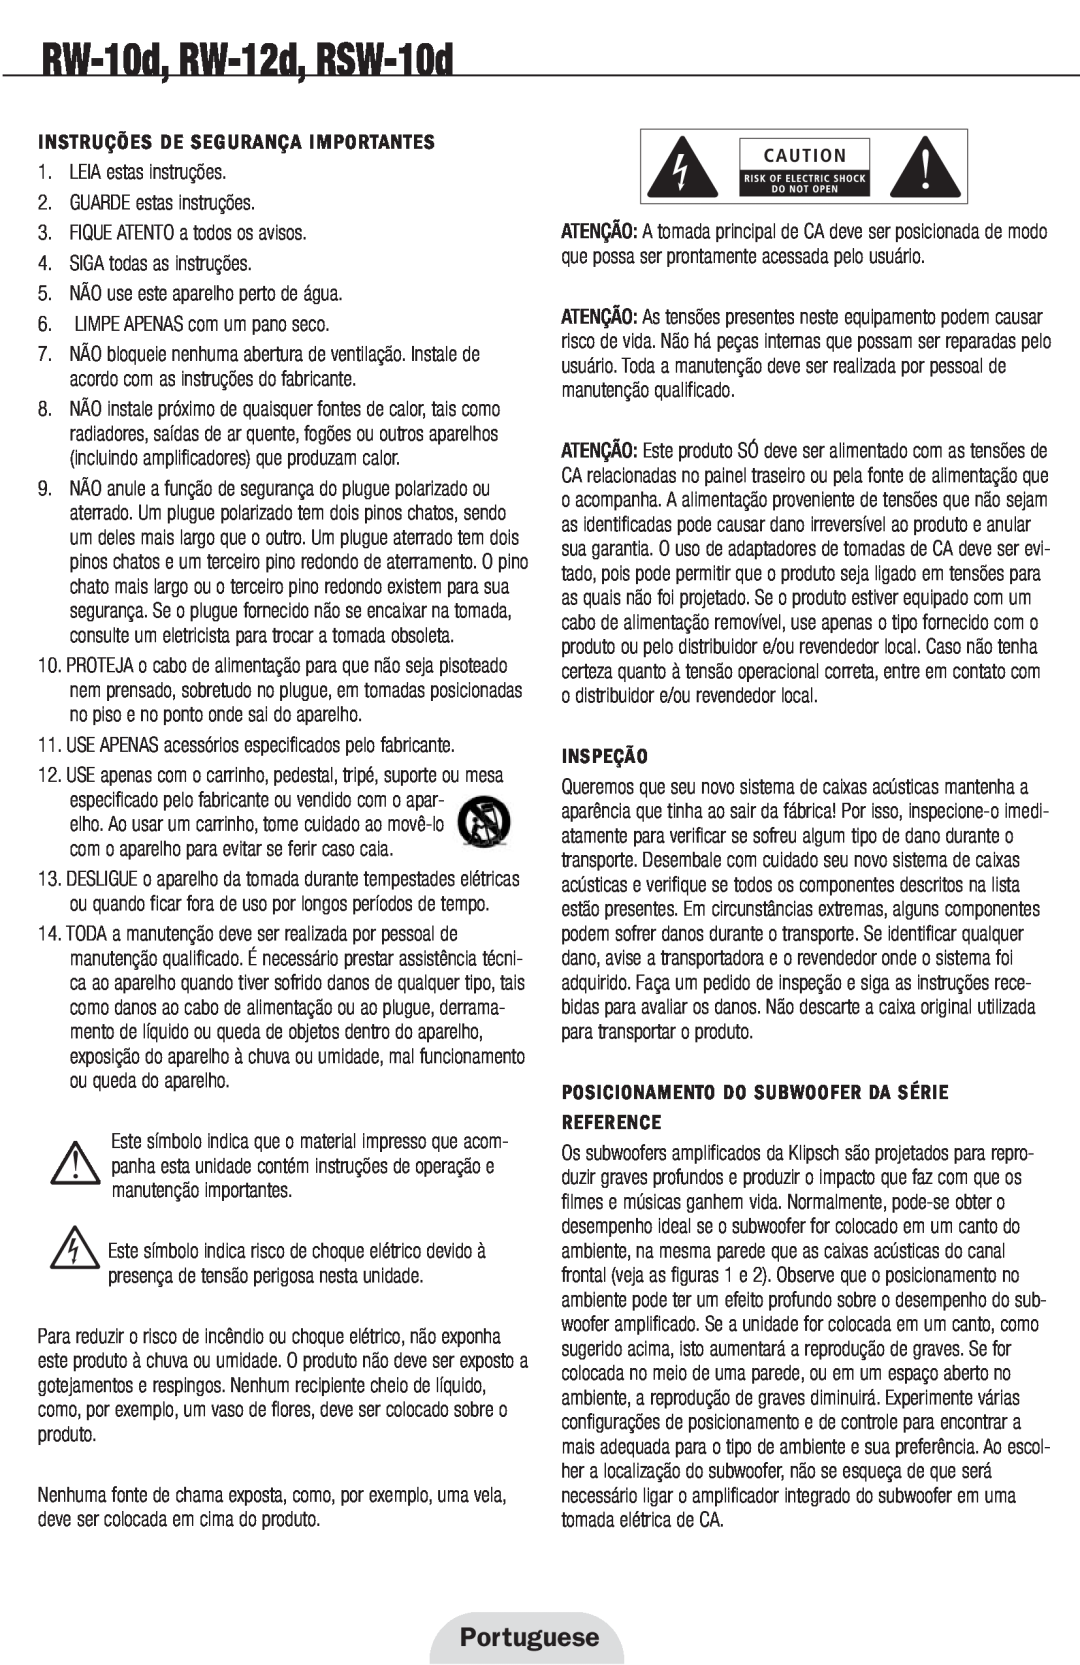 Klipsch 12d Portuguese, Instruções De Segurança Importantes, LEIA estas instruções 2.GUARDE estas instruções, Inspeção 